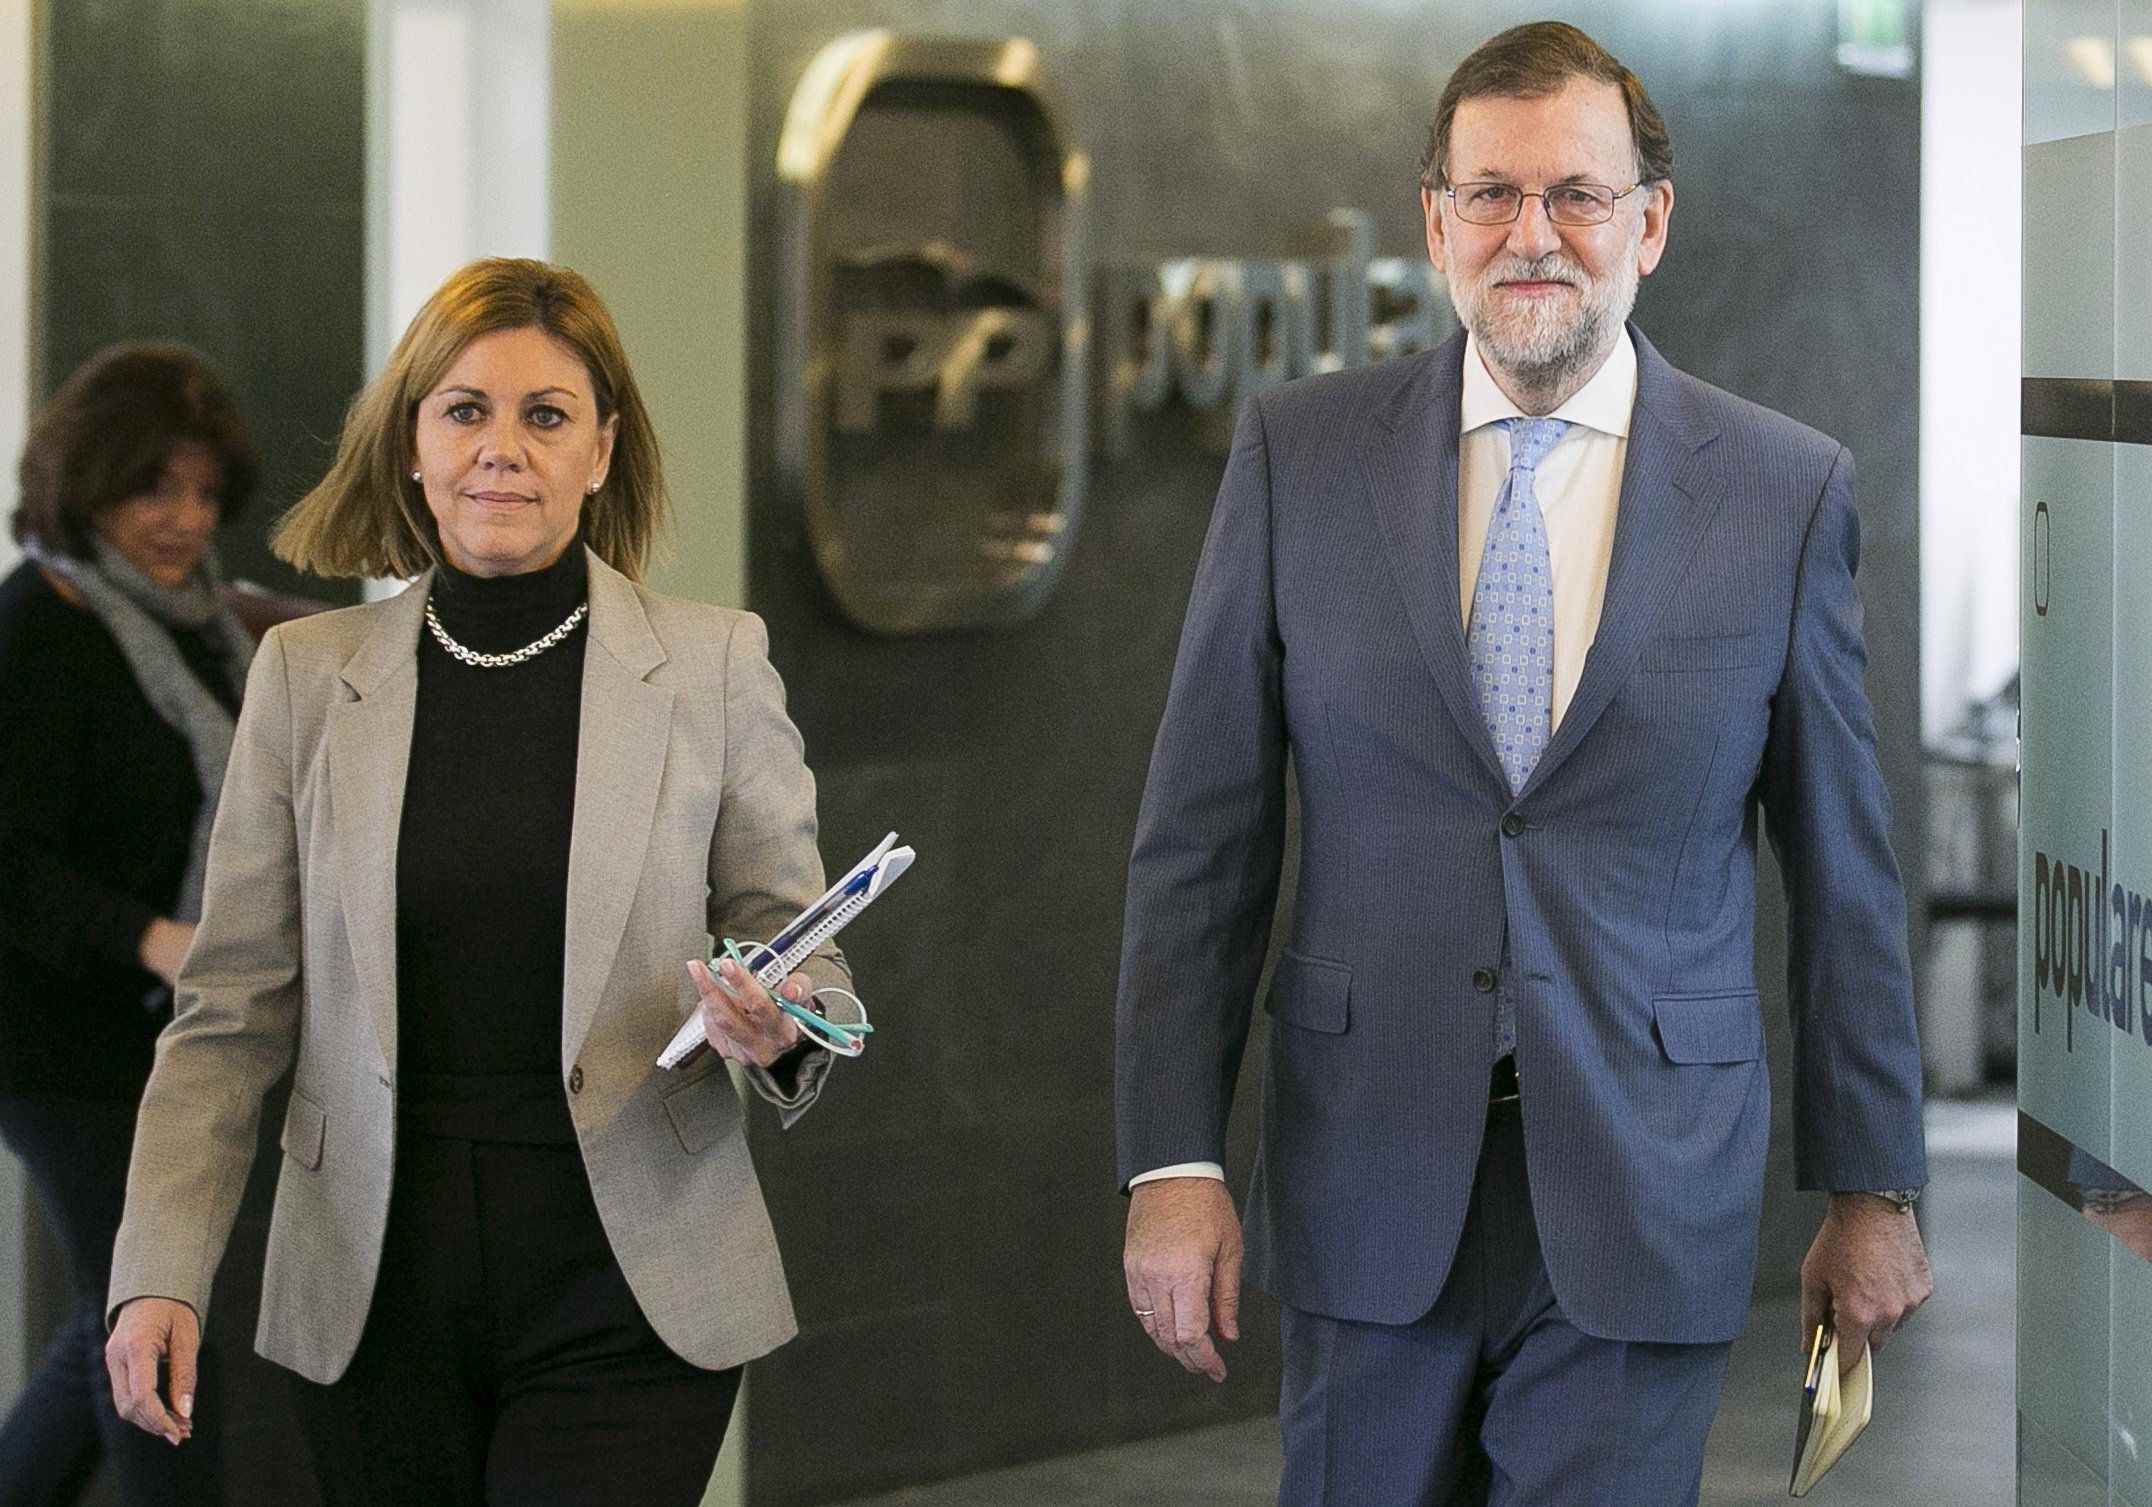 El PSOE rectifica e incluye al PP en el diálogo